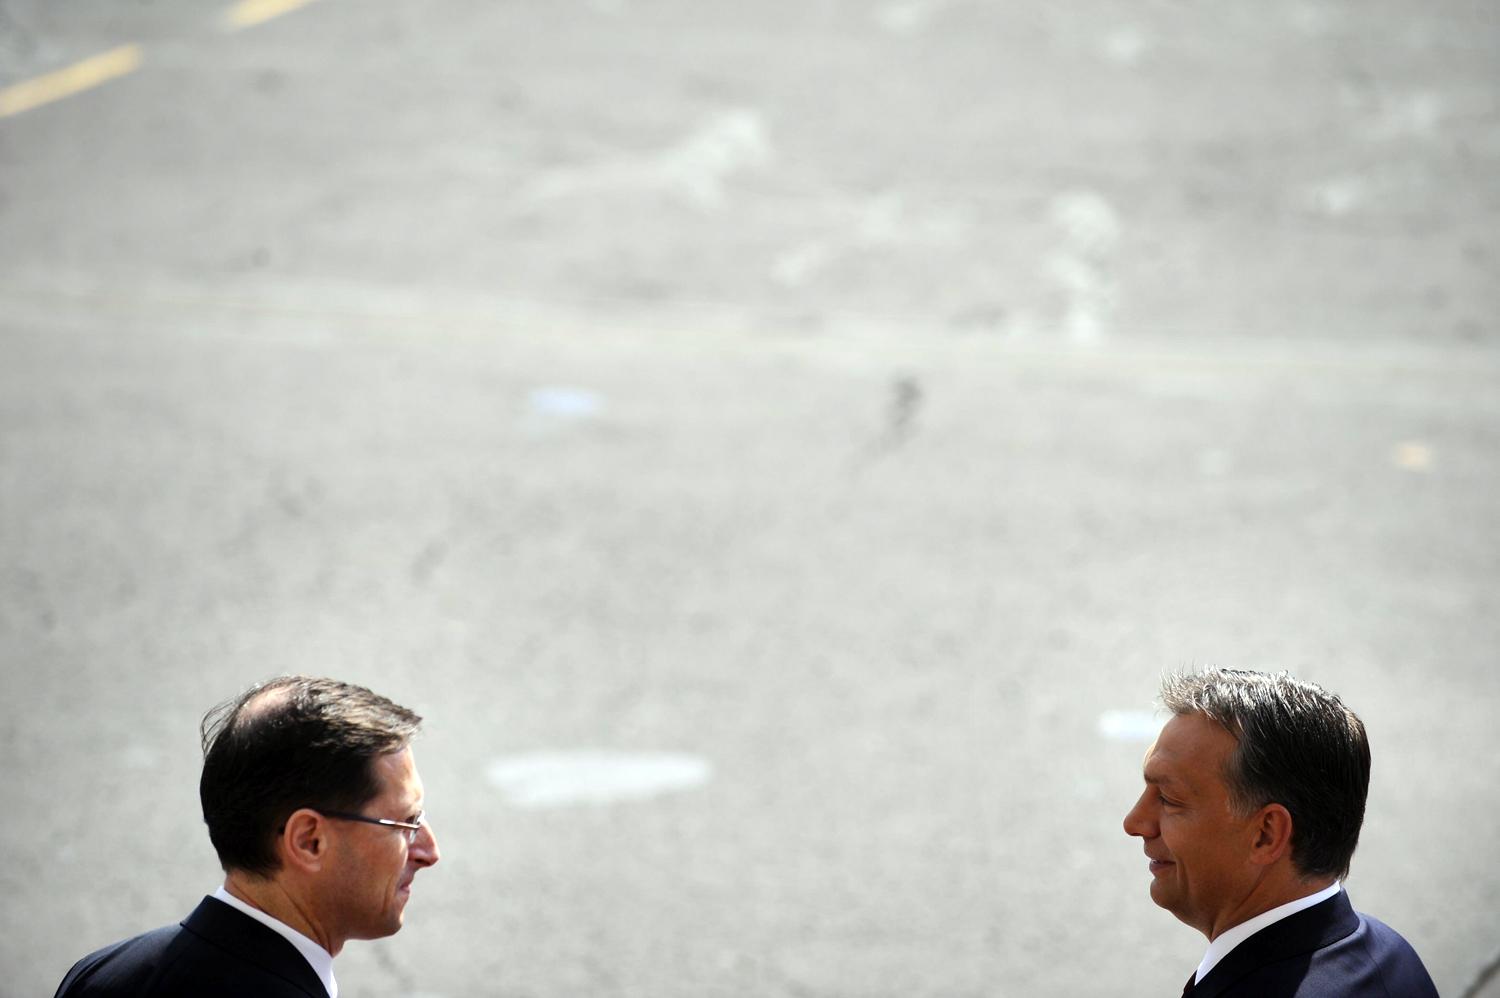 Varga Mihály jelenlegi nemzetgazdasági miniszter és Orbán Viktor miniszterelnök a Parlament főlépcsőjén 2010 nyarán. Dicsérnek, de nem ajánlanak